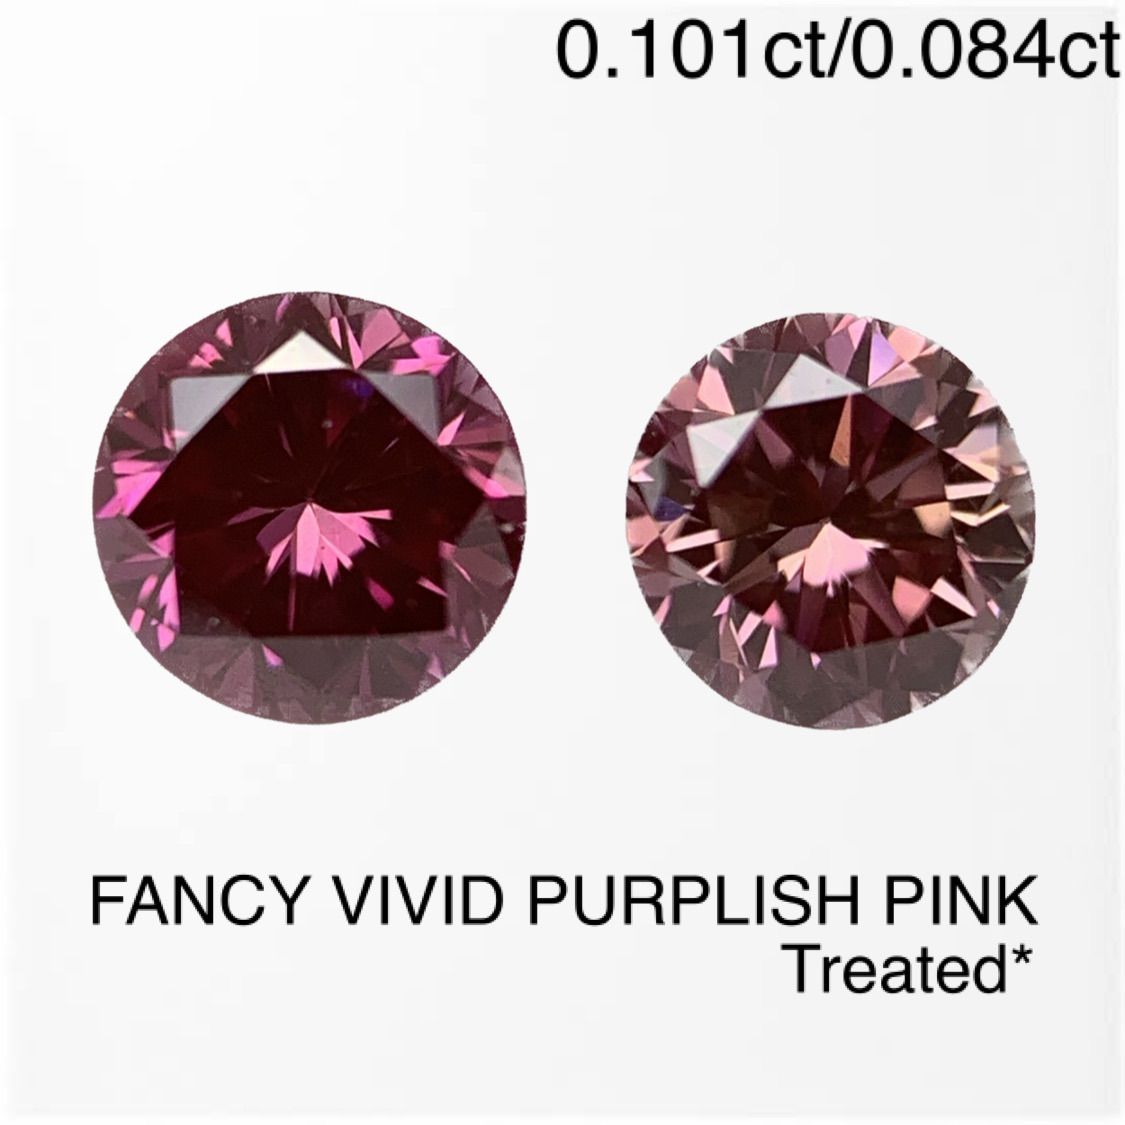 中央宝石研究所 FANCY VIVID PURPLISH PINK Treated* ダイヤモンド